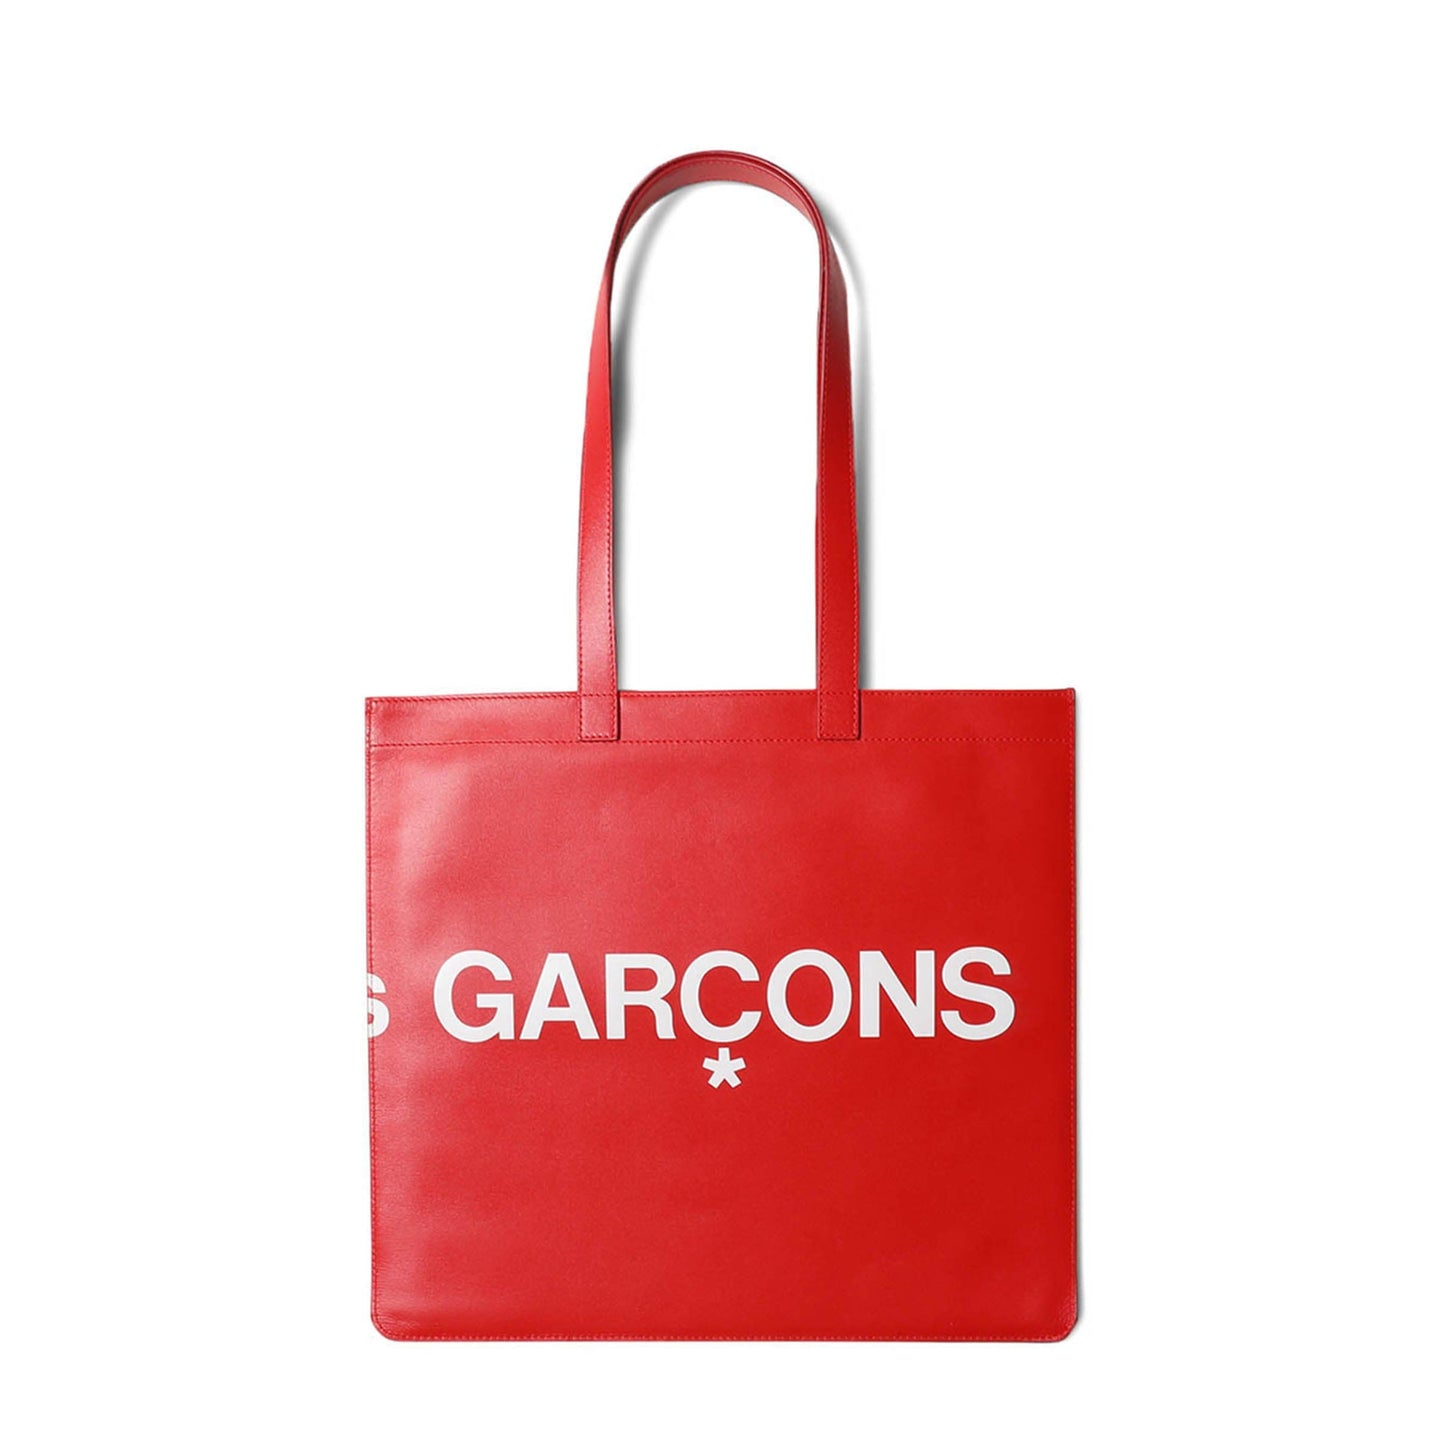 Comme Des Garçons Wallet Bags RED / O/S HUGE LOGO